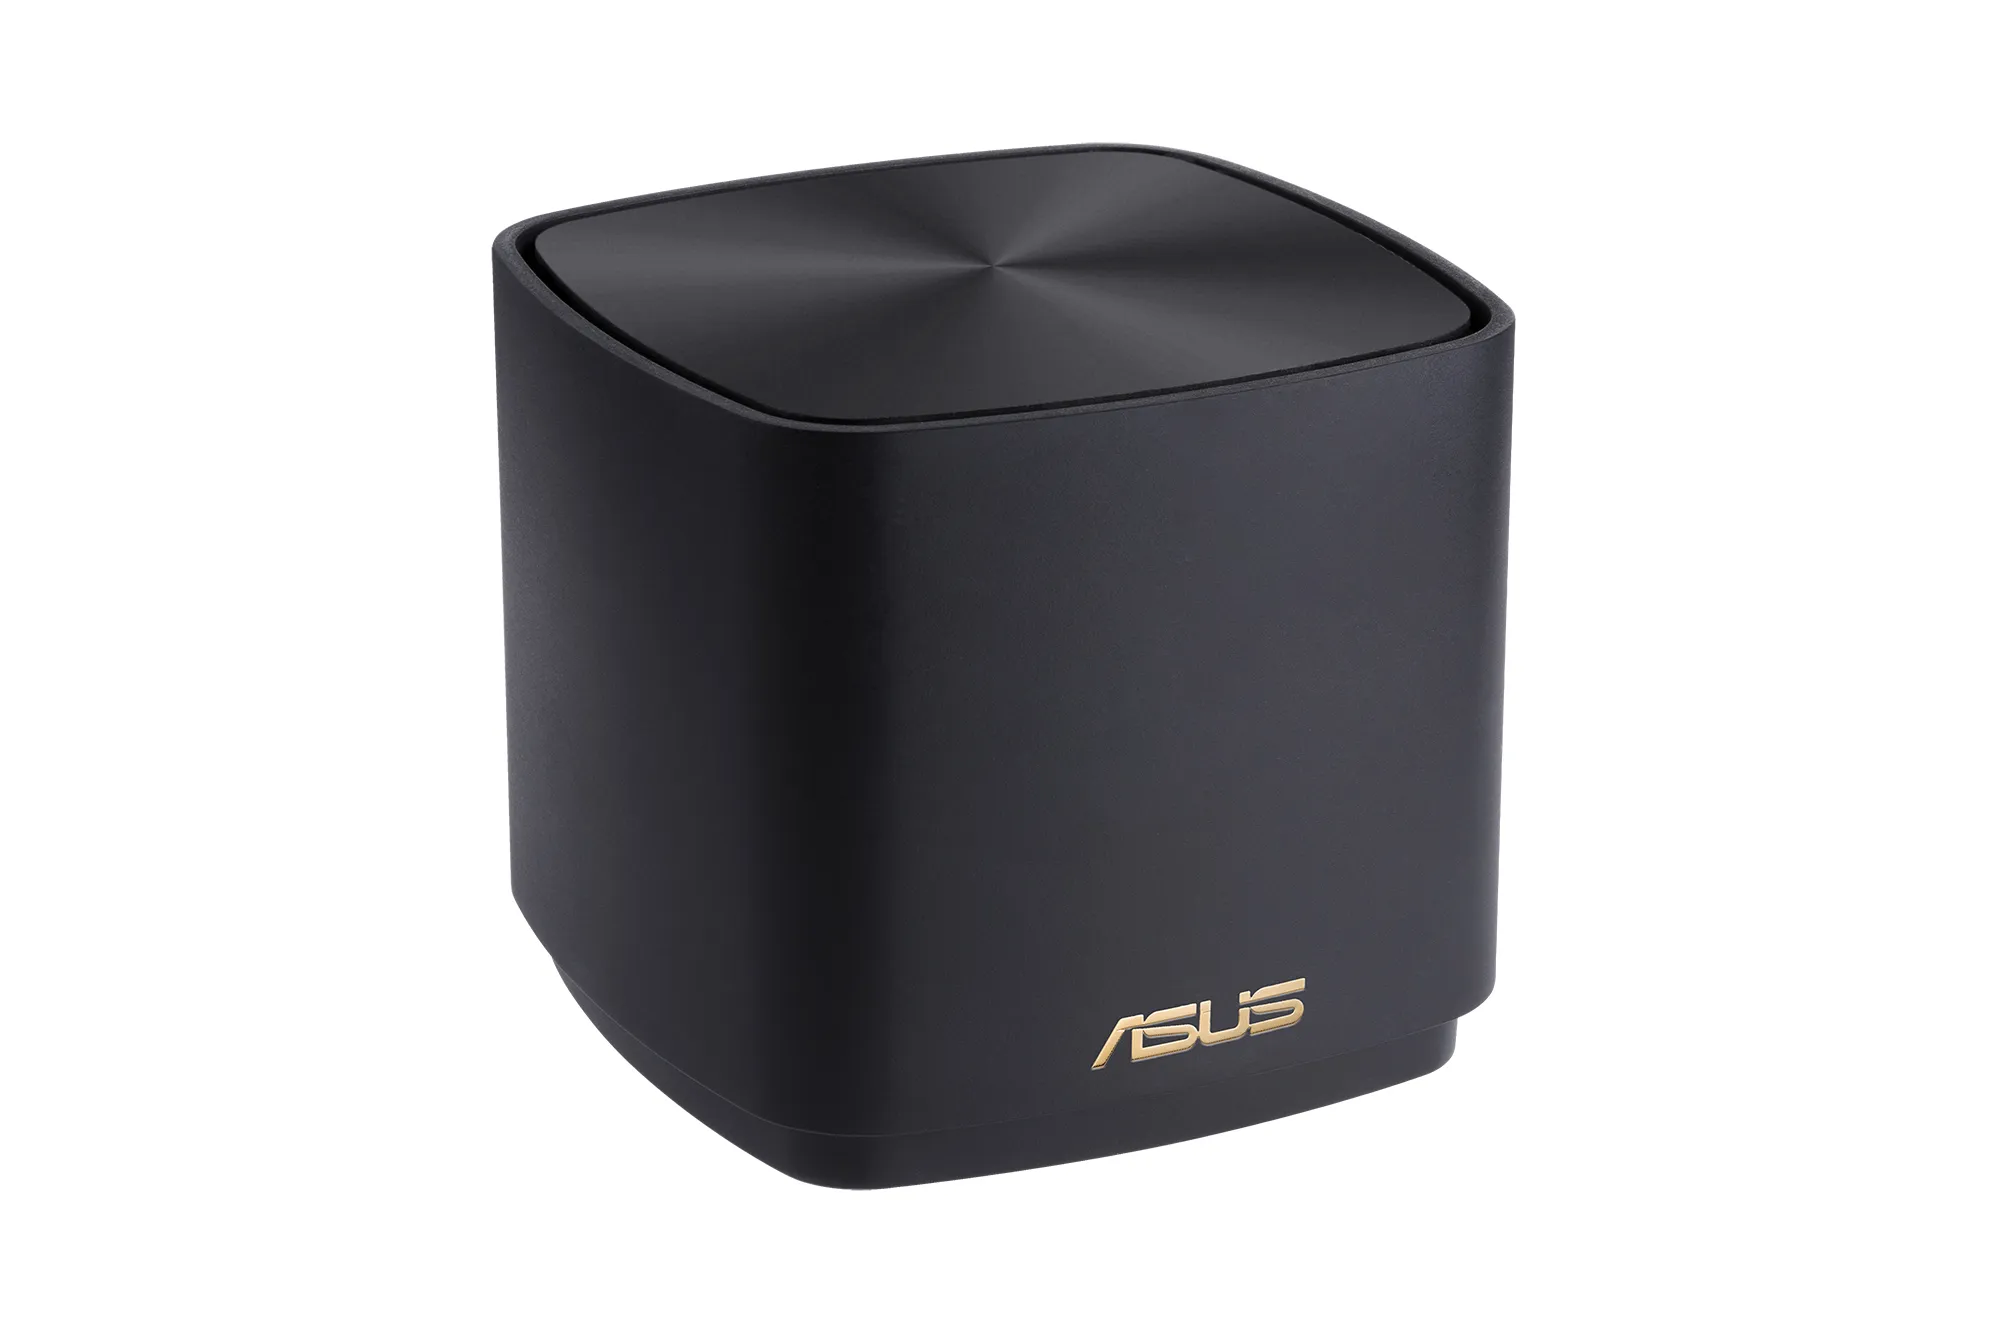 Vente ASUS ZenWiFi XD4 PLUS 2 pack Black xDSL ASUS au meilleur prix - visuel 4